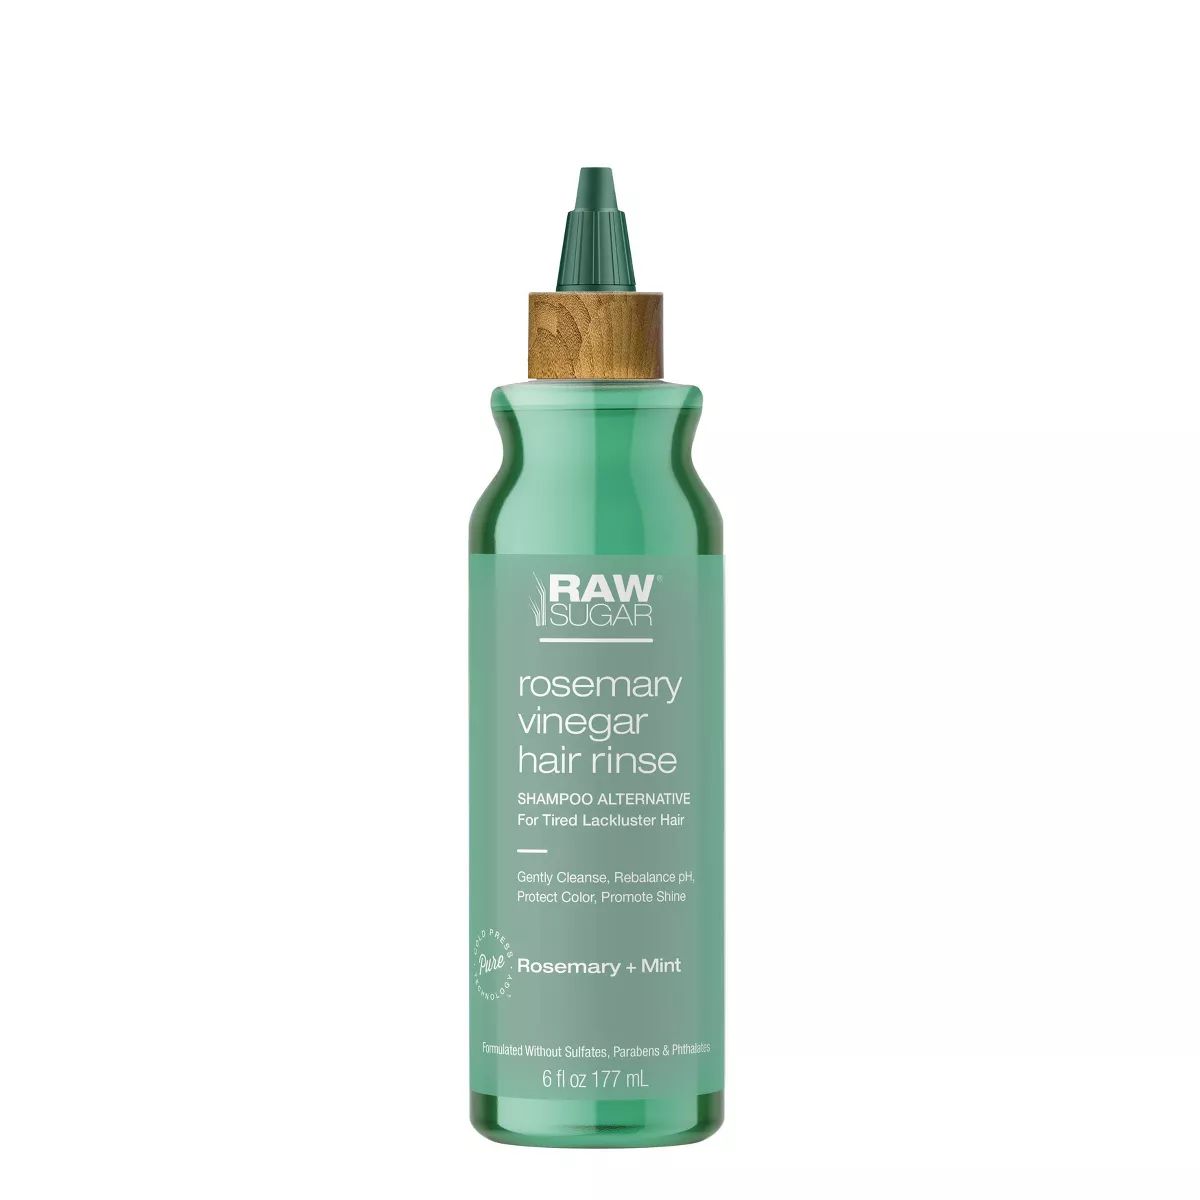 Raw Sugar Rosemary Vinegar Hair Rinse Shampoo Alternative - 6 fl oz | Target